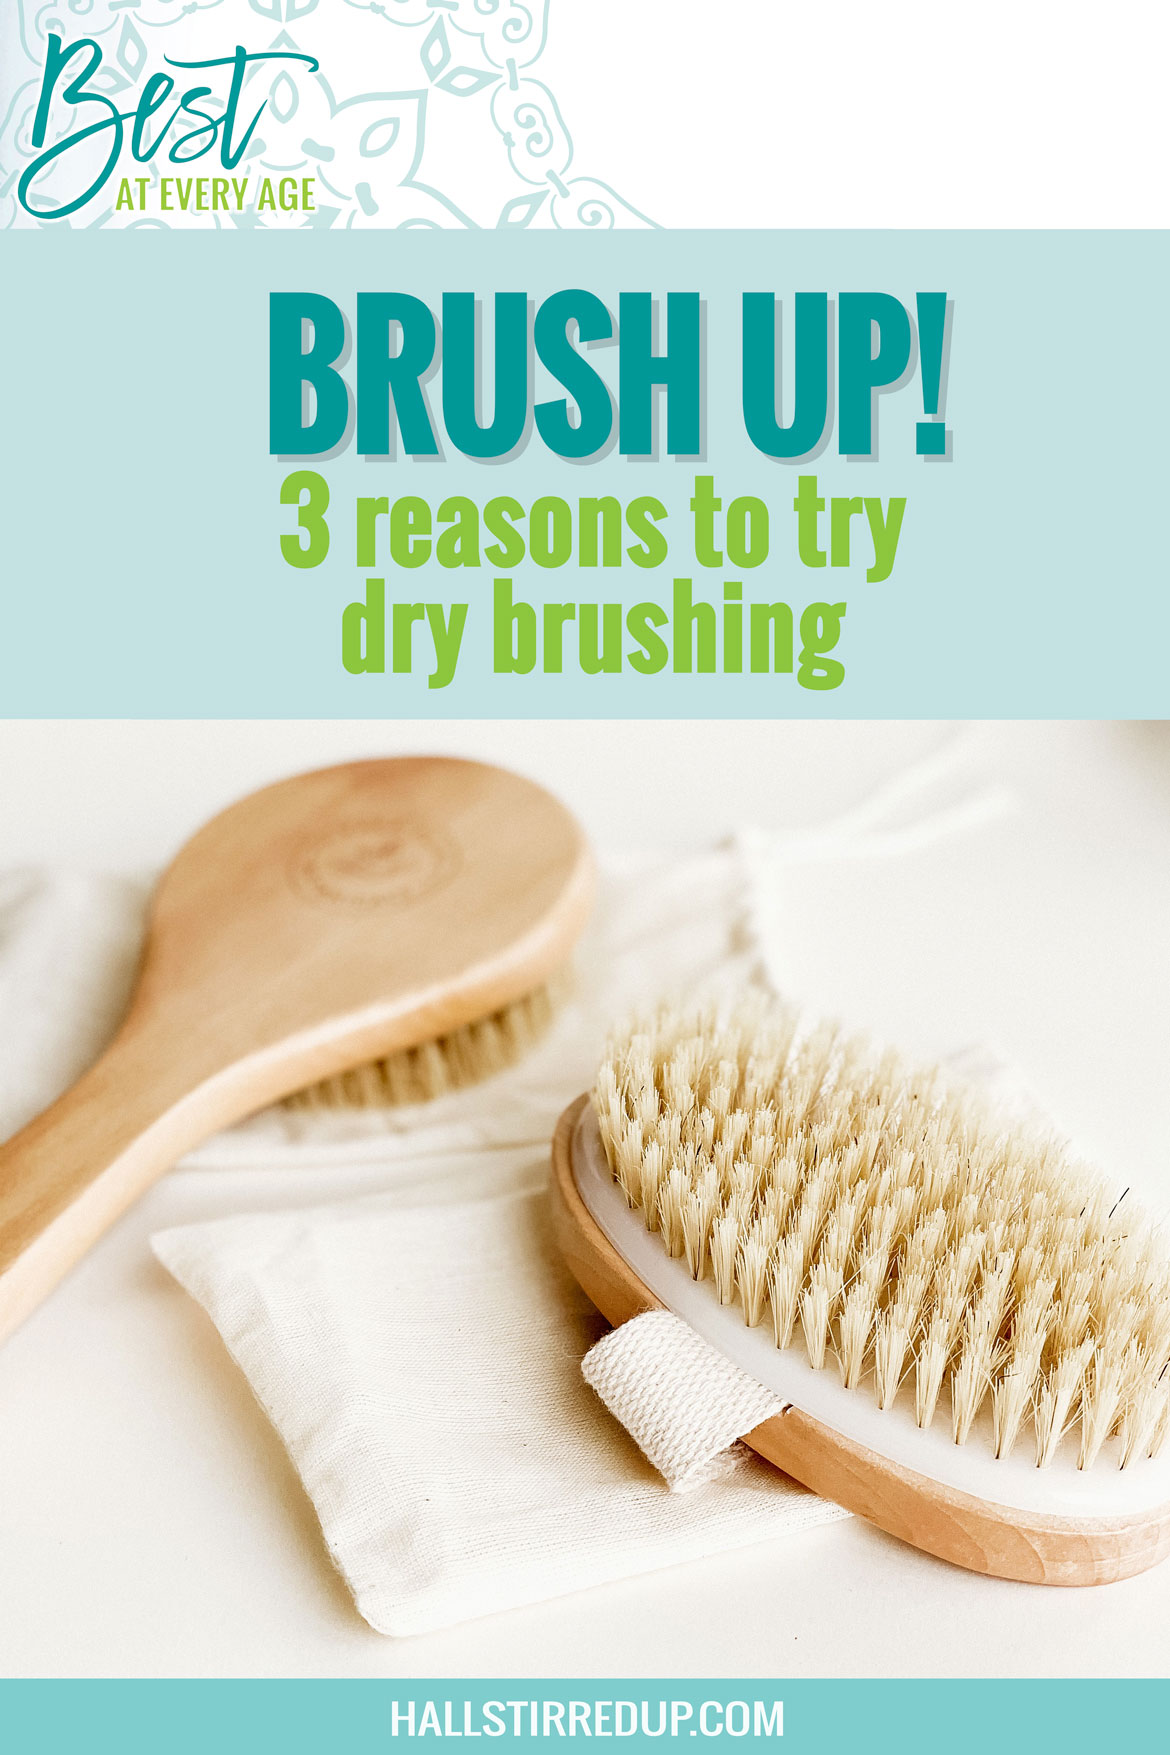 Brush up 3 reasons to try dry brushing